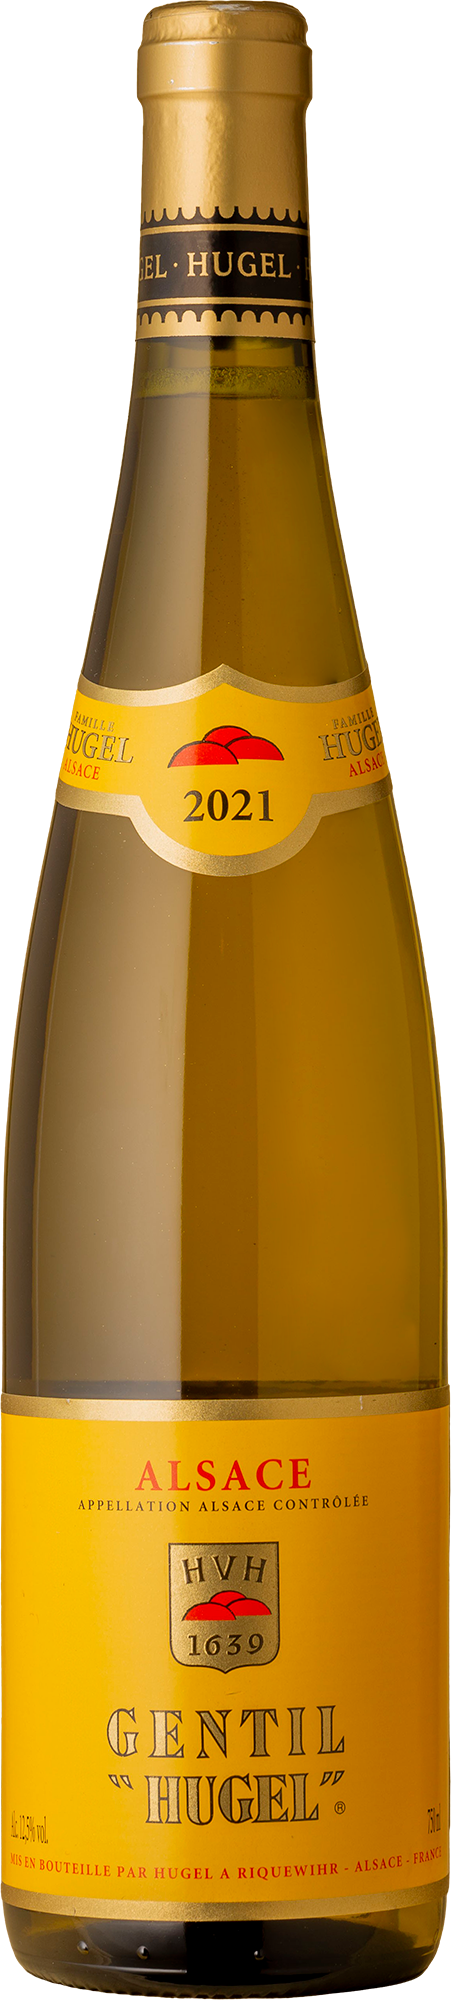 Hugel - Gentil Gewurztraminer Pinot Gris Riesling 2021 White Wine